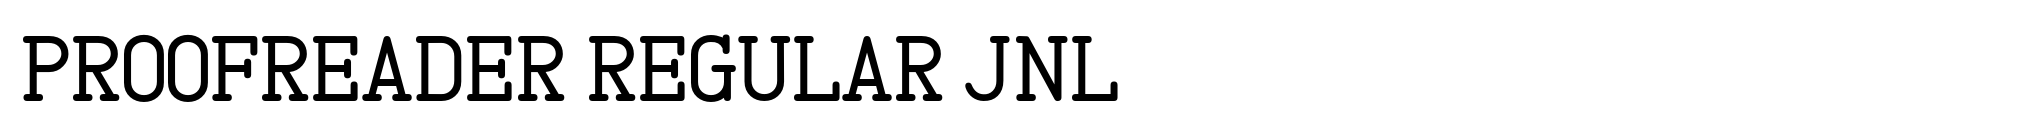 Proofreader Regular JNL image